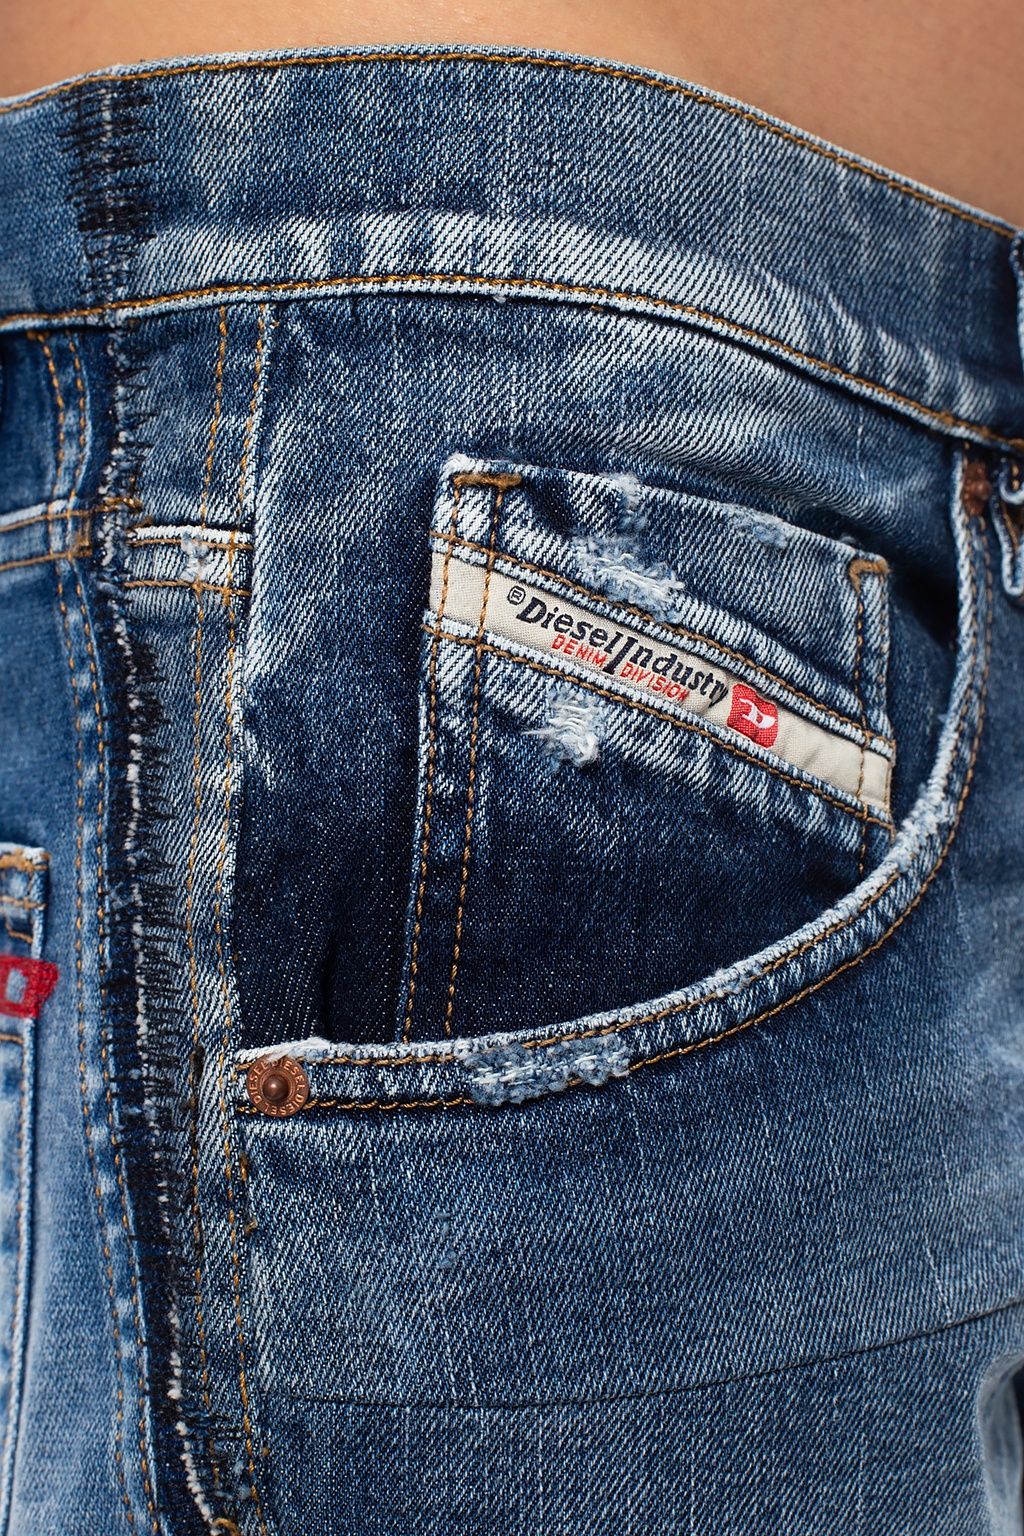 Diesel ‘D-Strukt’ jeans | Men's Clothing | Vitkac